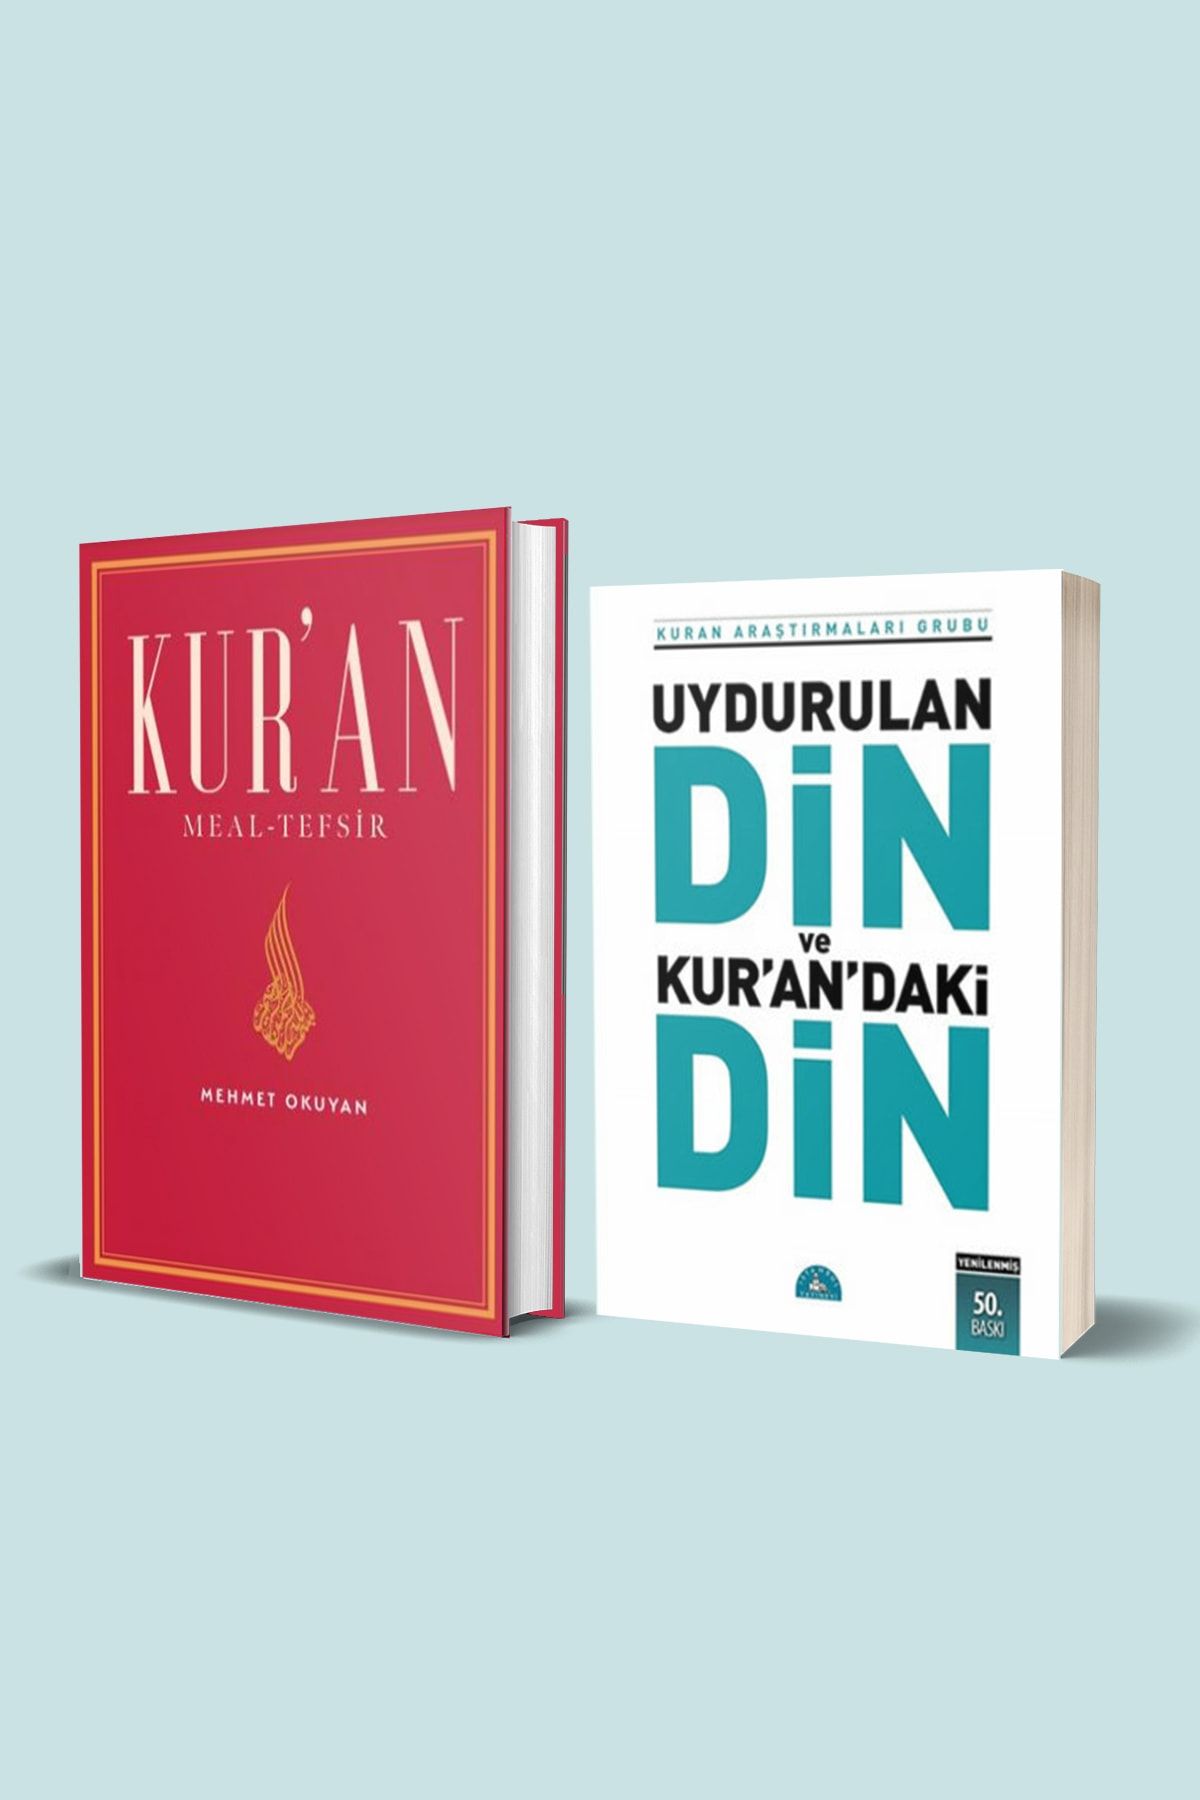 İstanbul Yayınevi Kur'an Meal-tefsir (mehmet Okuyan) & Uydurulan Din Ve Kur'an'daki Din 2 Kitap Set